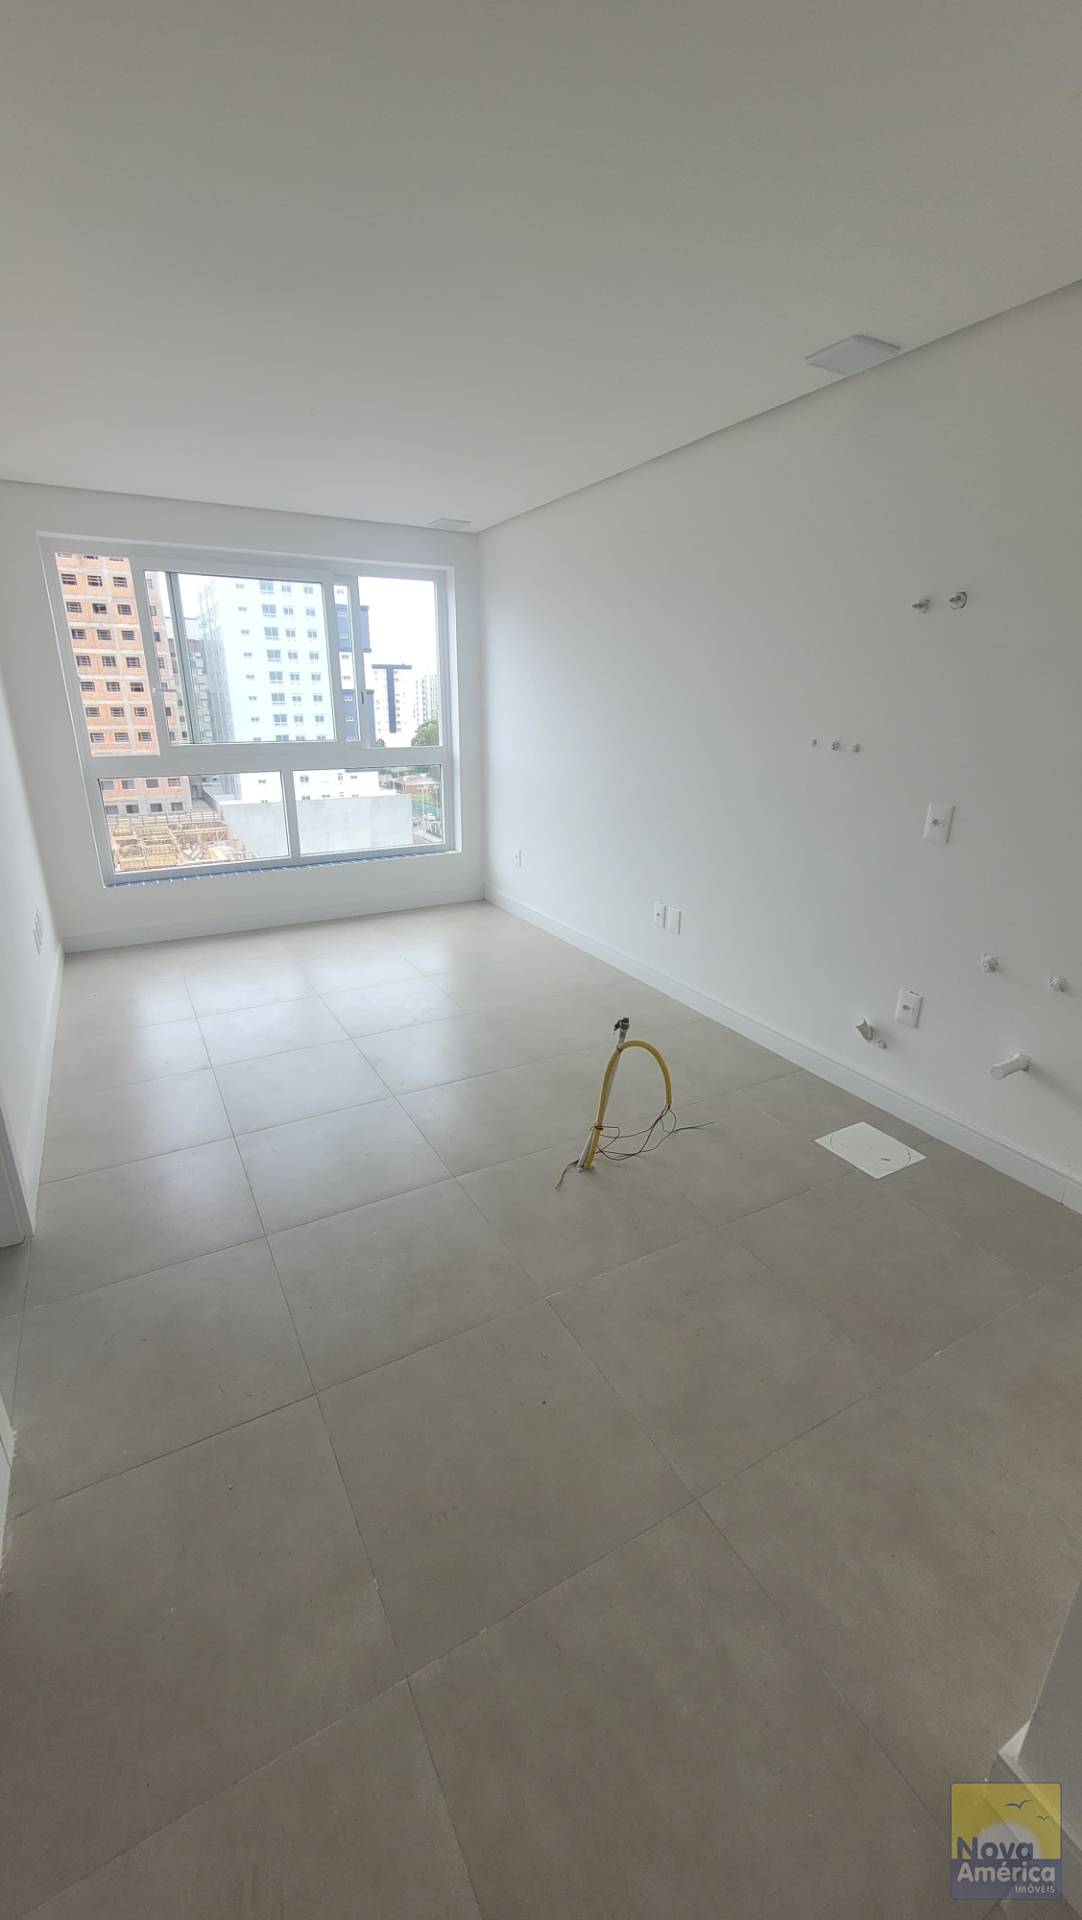 Apartamento 1 dormitório para venda, Zona Nova em Capão da Canoa | Ref.: 22011